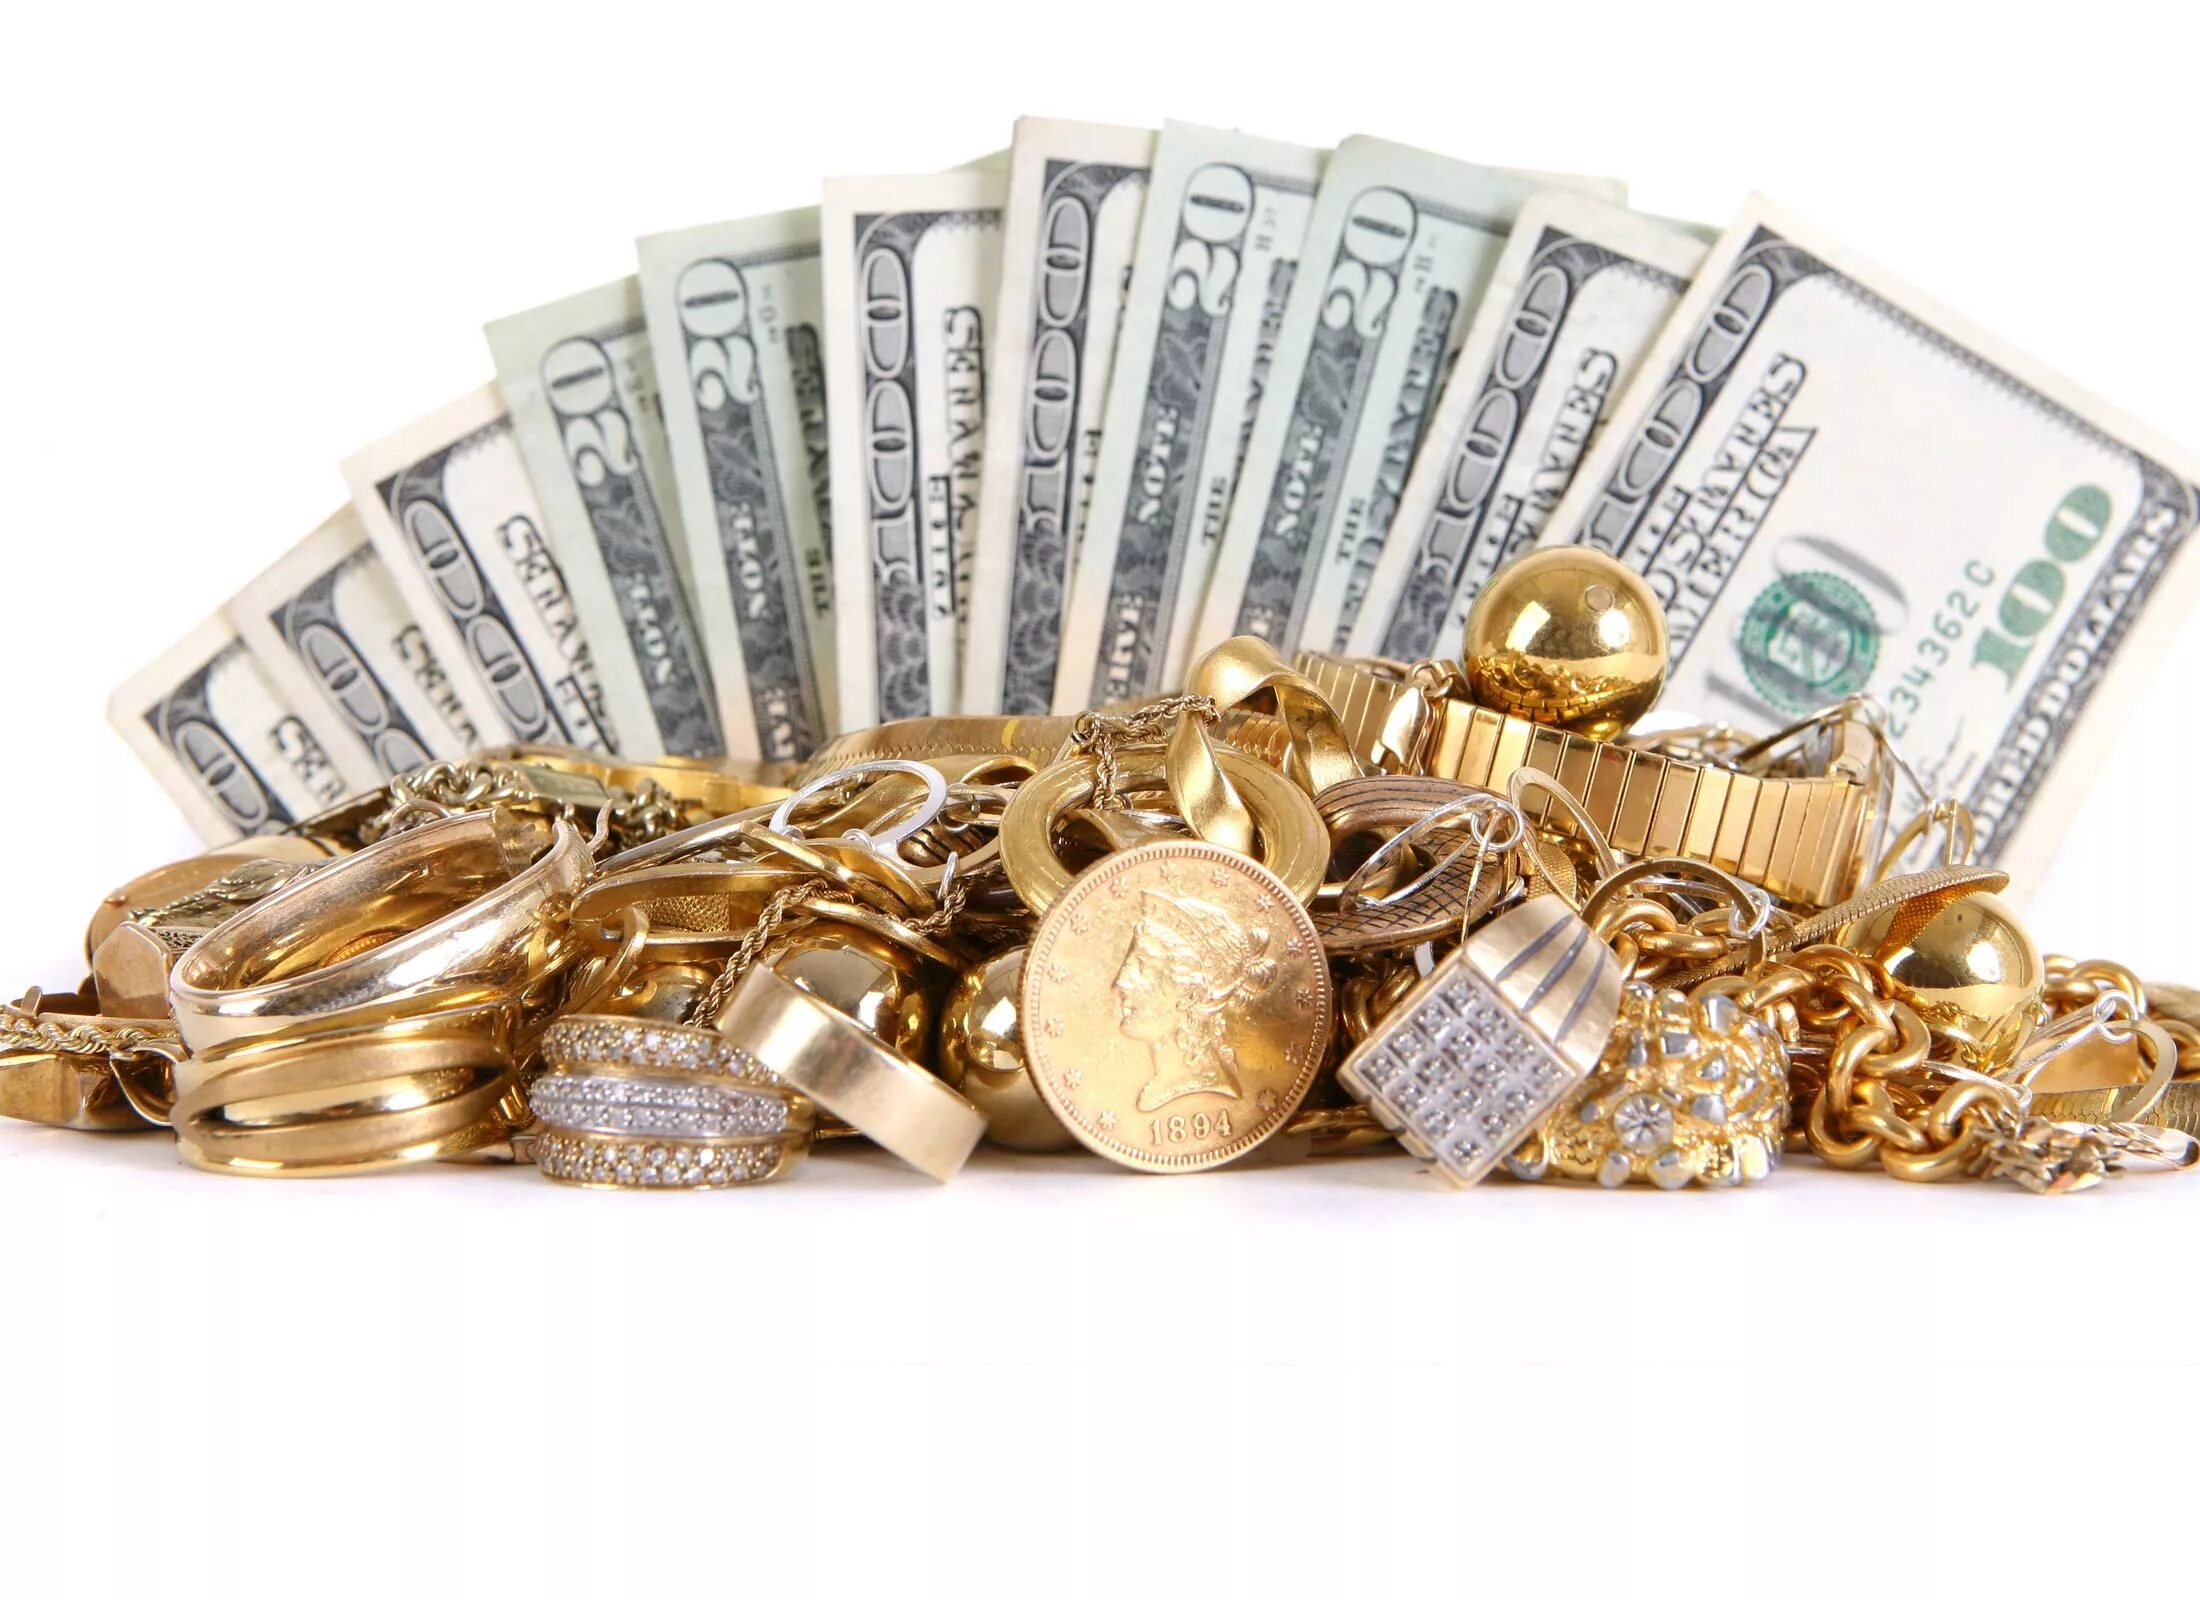 Богатство в многообразии. Золото богатство. Деньги золото богатство. Деньги богатство изобилие. Деньги золото бриллианты.